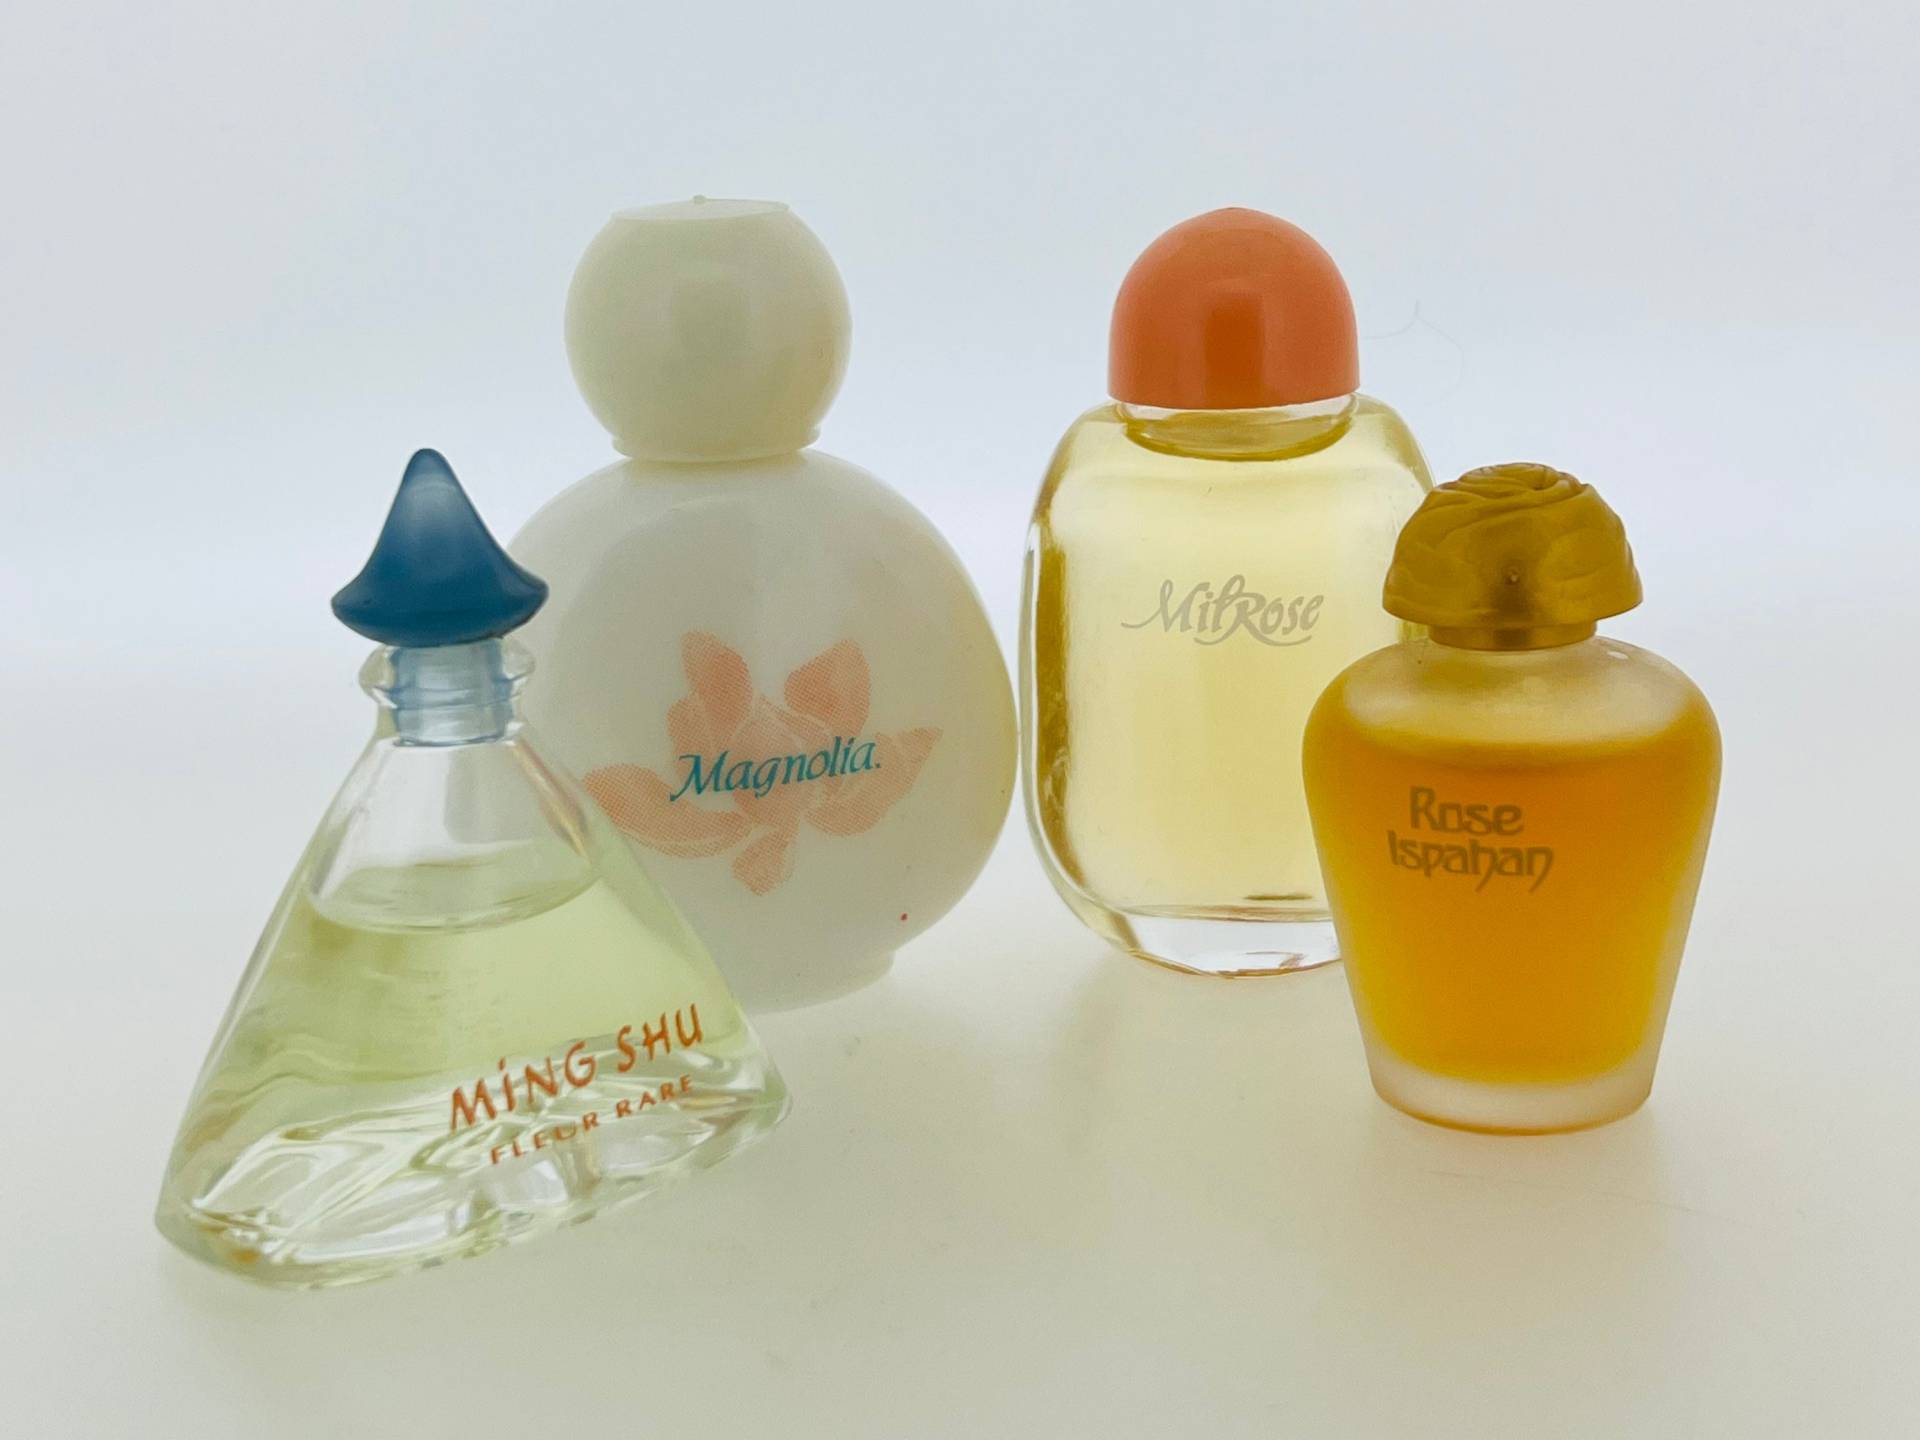 Set 4 Vintage Miniatur Parfüm, Yves Rocher, Ming Shu Fleur Rare, Magnolie, Rose Ispahan Eau De Toilette 5 Ml von VintagePerfumeShop